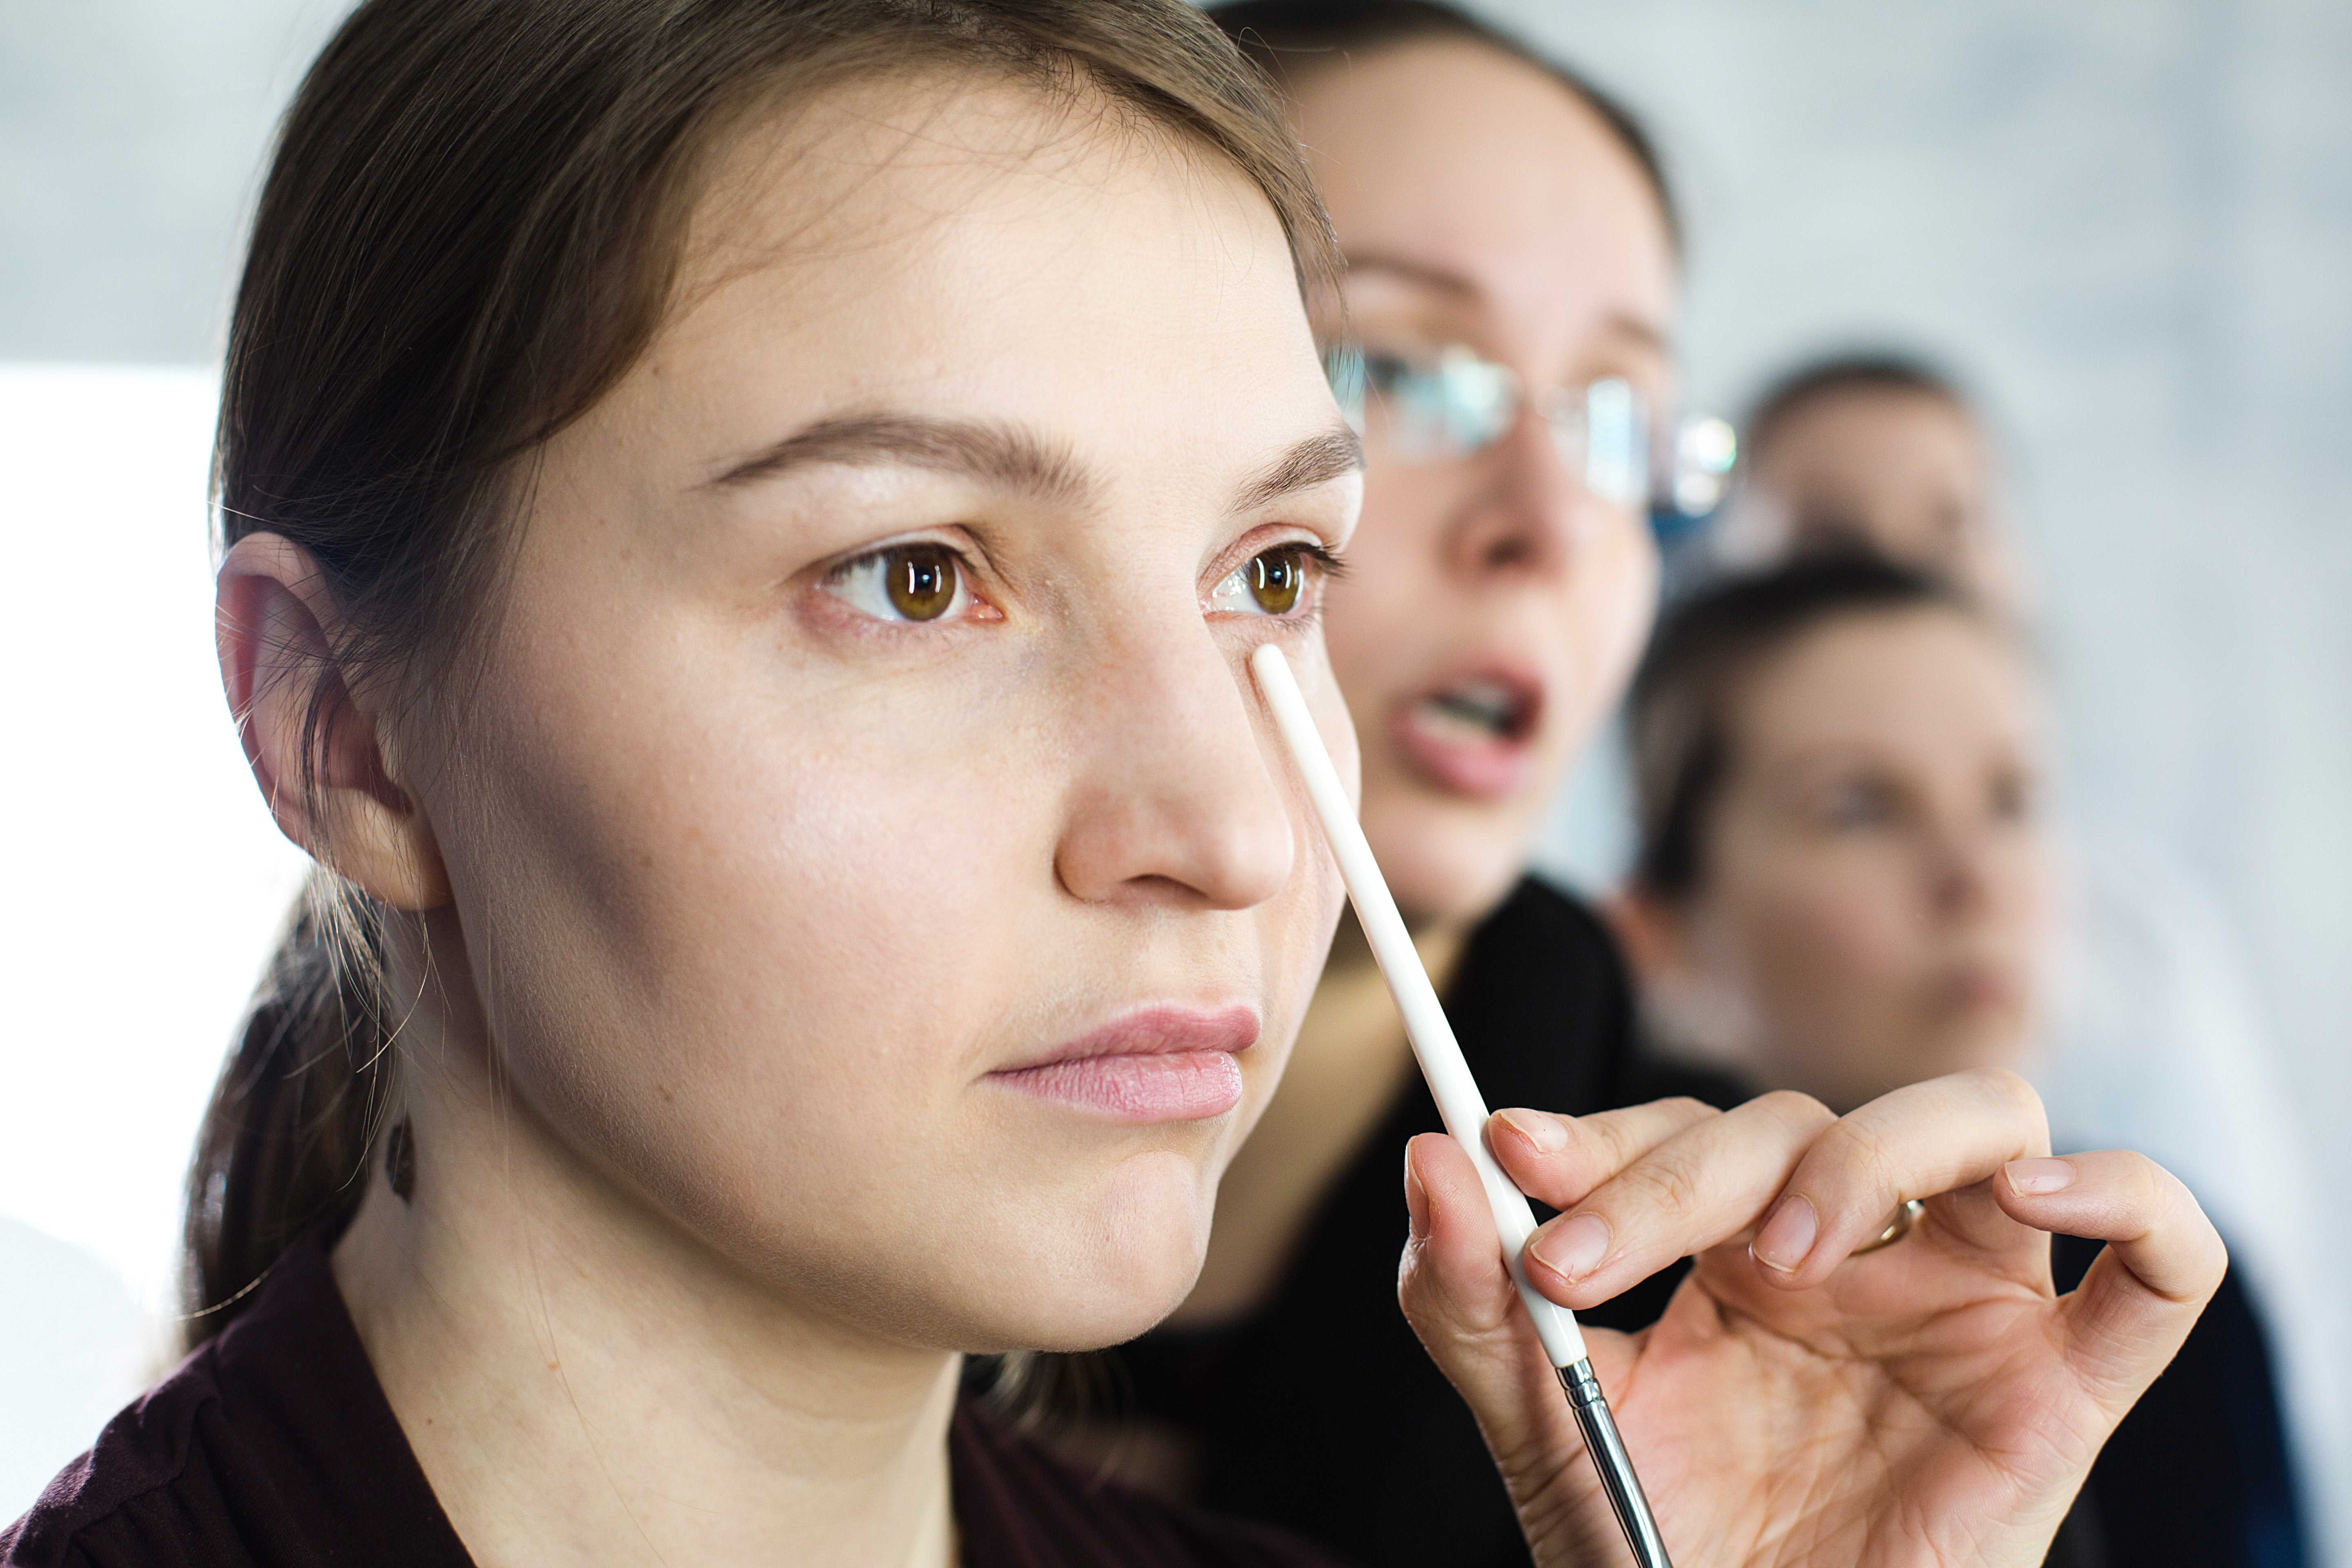 Дневной макияж: советы мастеров, нюансы применения и разновидности дневного макияжа (140 фото + видео)